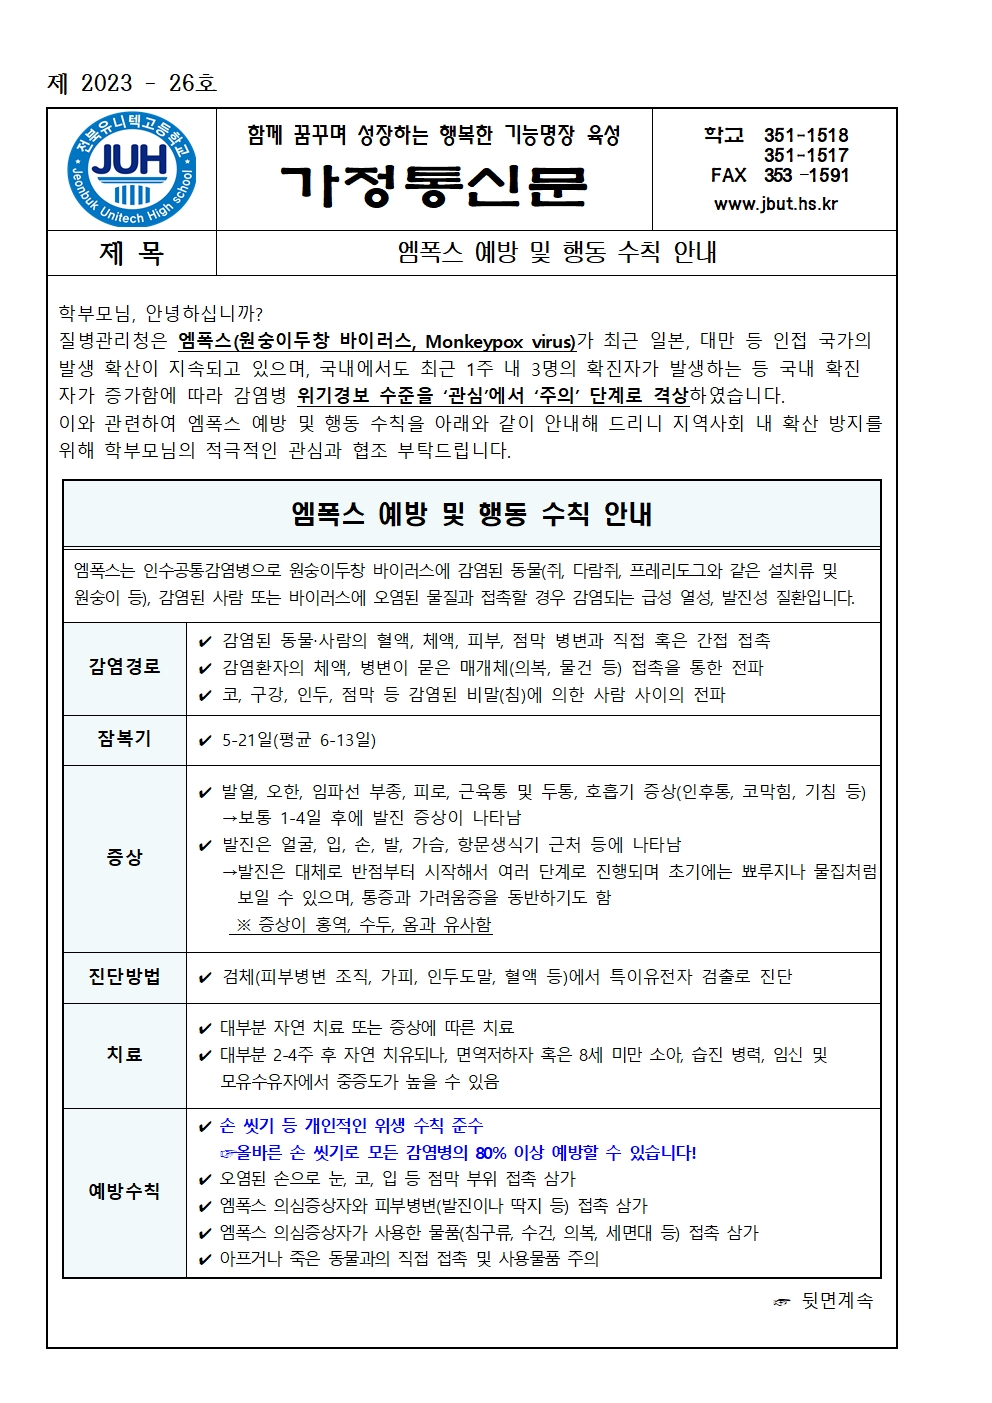 엠폭스 예방 및 행동 수칙 안내(2023-26)001